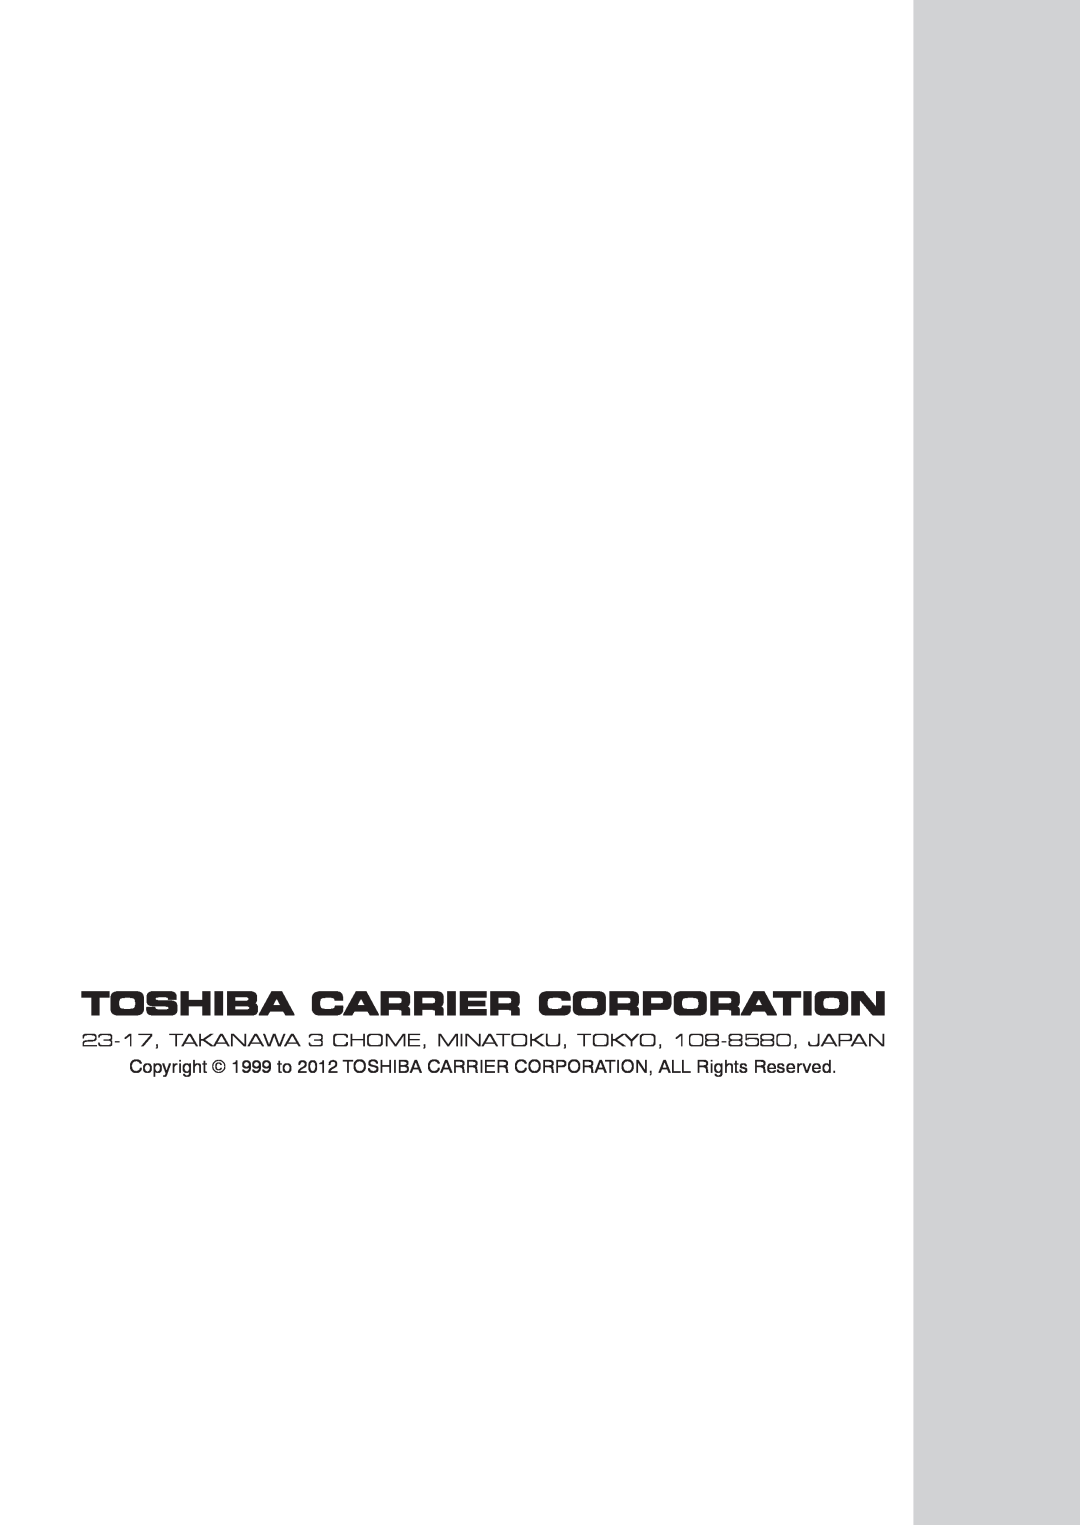 Toshiba RAV-SM406BT-TR Toshiba Carrier Corporation, 23-17, TAKANAWA 3 CHOME, MINATOKU, TOKYO, 108-8580, JAPAN 